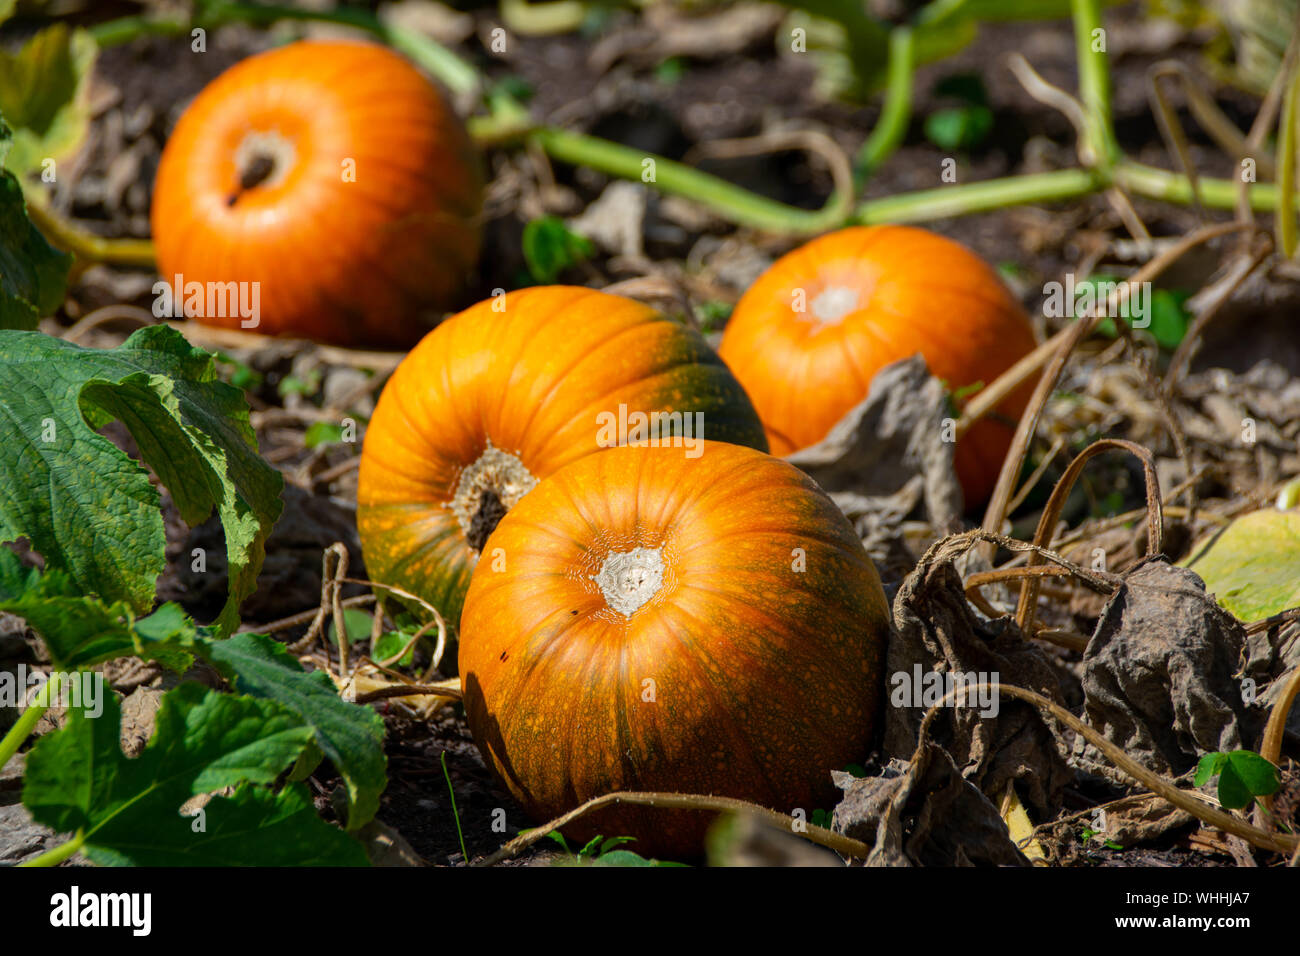 Pumpkin Patch mit vier lecker aussehenden Kürbisse reichen in hellen Farben orange und grün, Wachsen und Reifen in einem organischen Gemüsegarten. Stockfoto